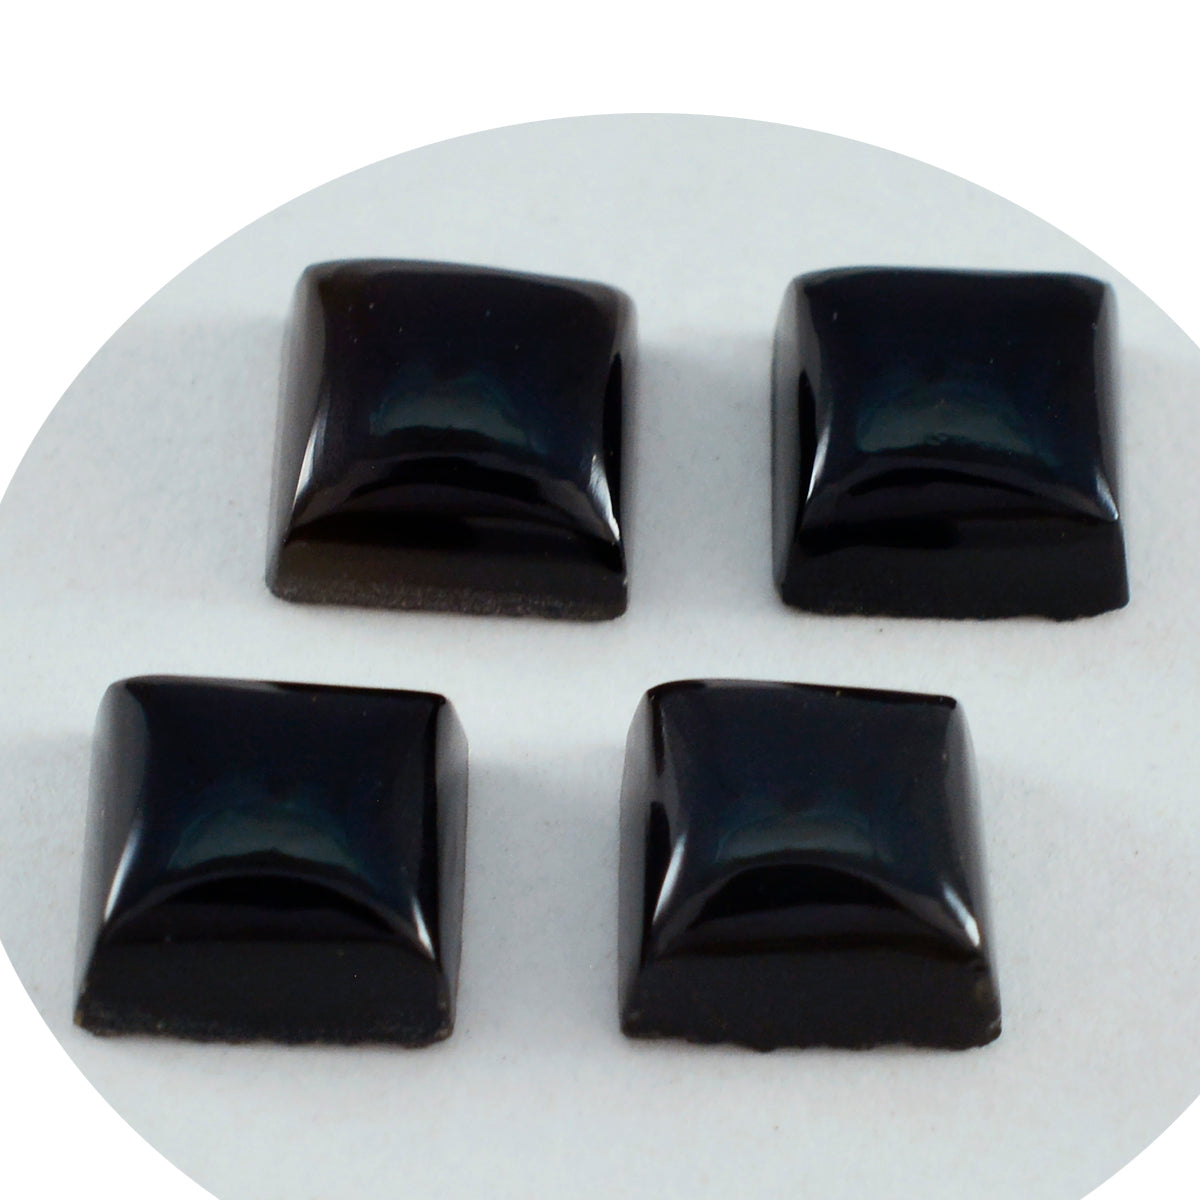 Riyogems 1PC zwarte onyx cabochon 15x15 mm vierkante vorm schoonheid kwaliteit losse edelsteen